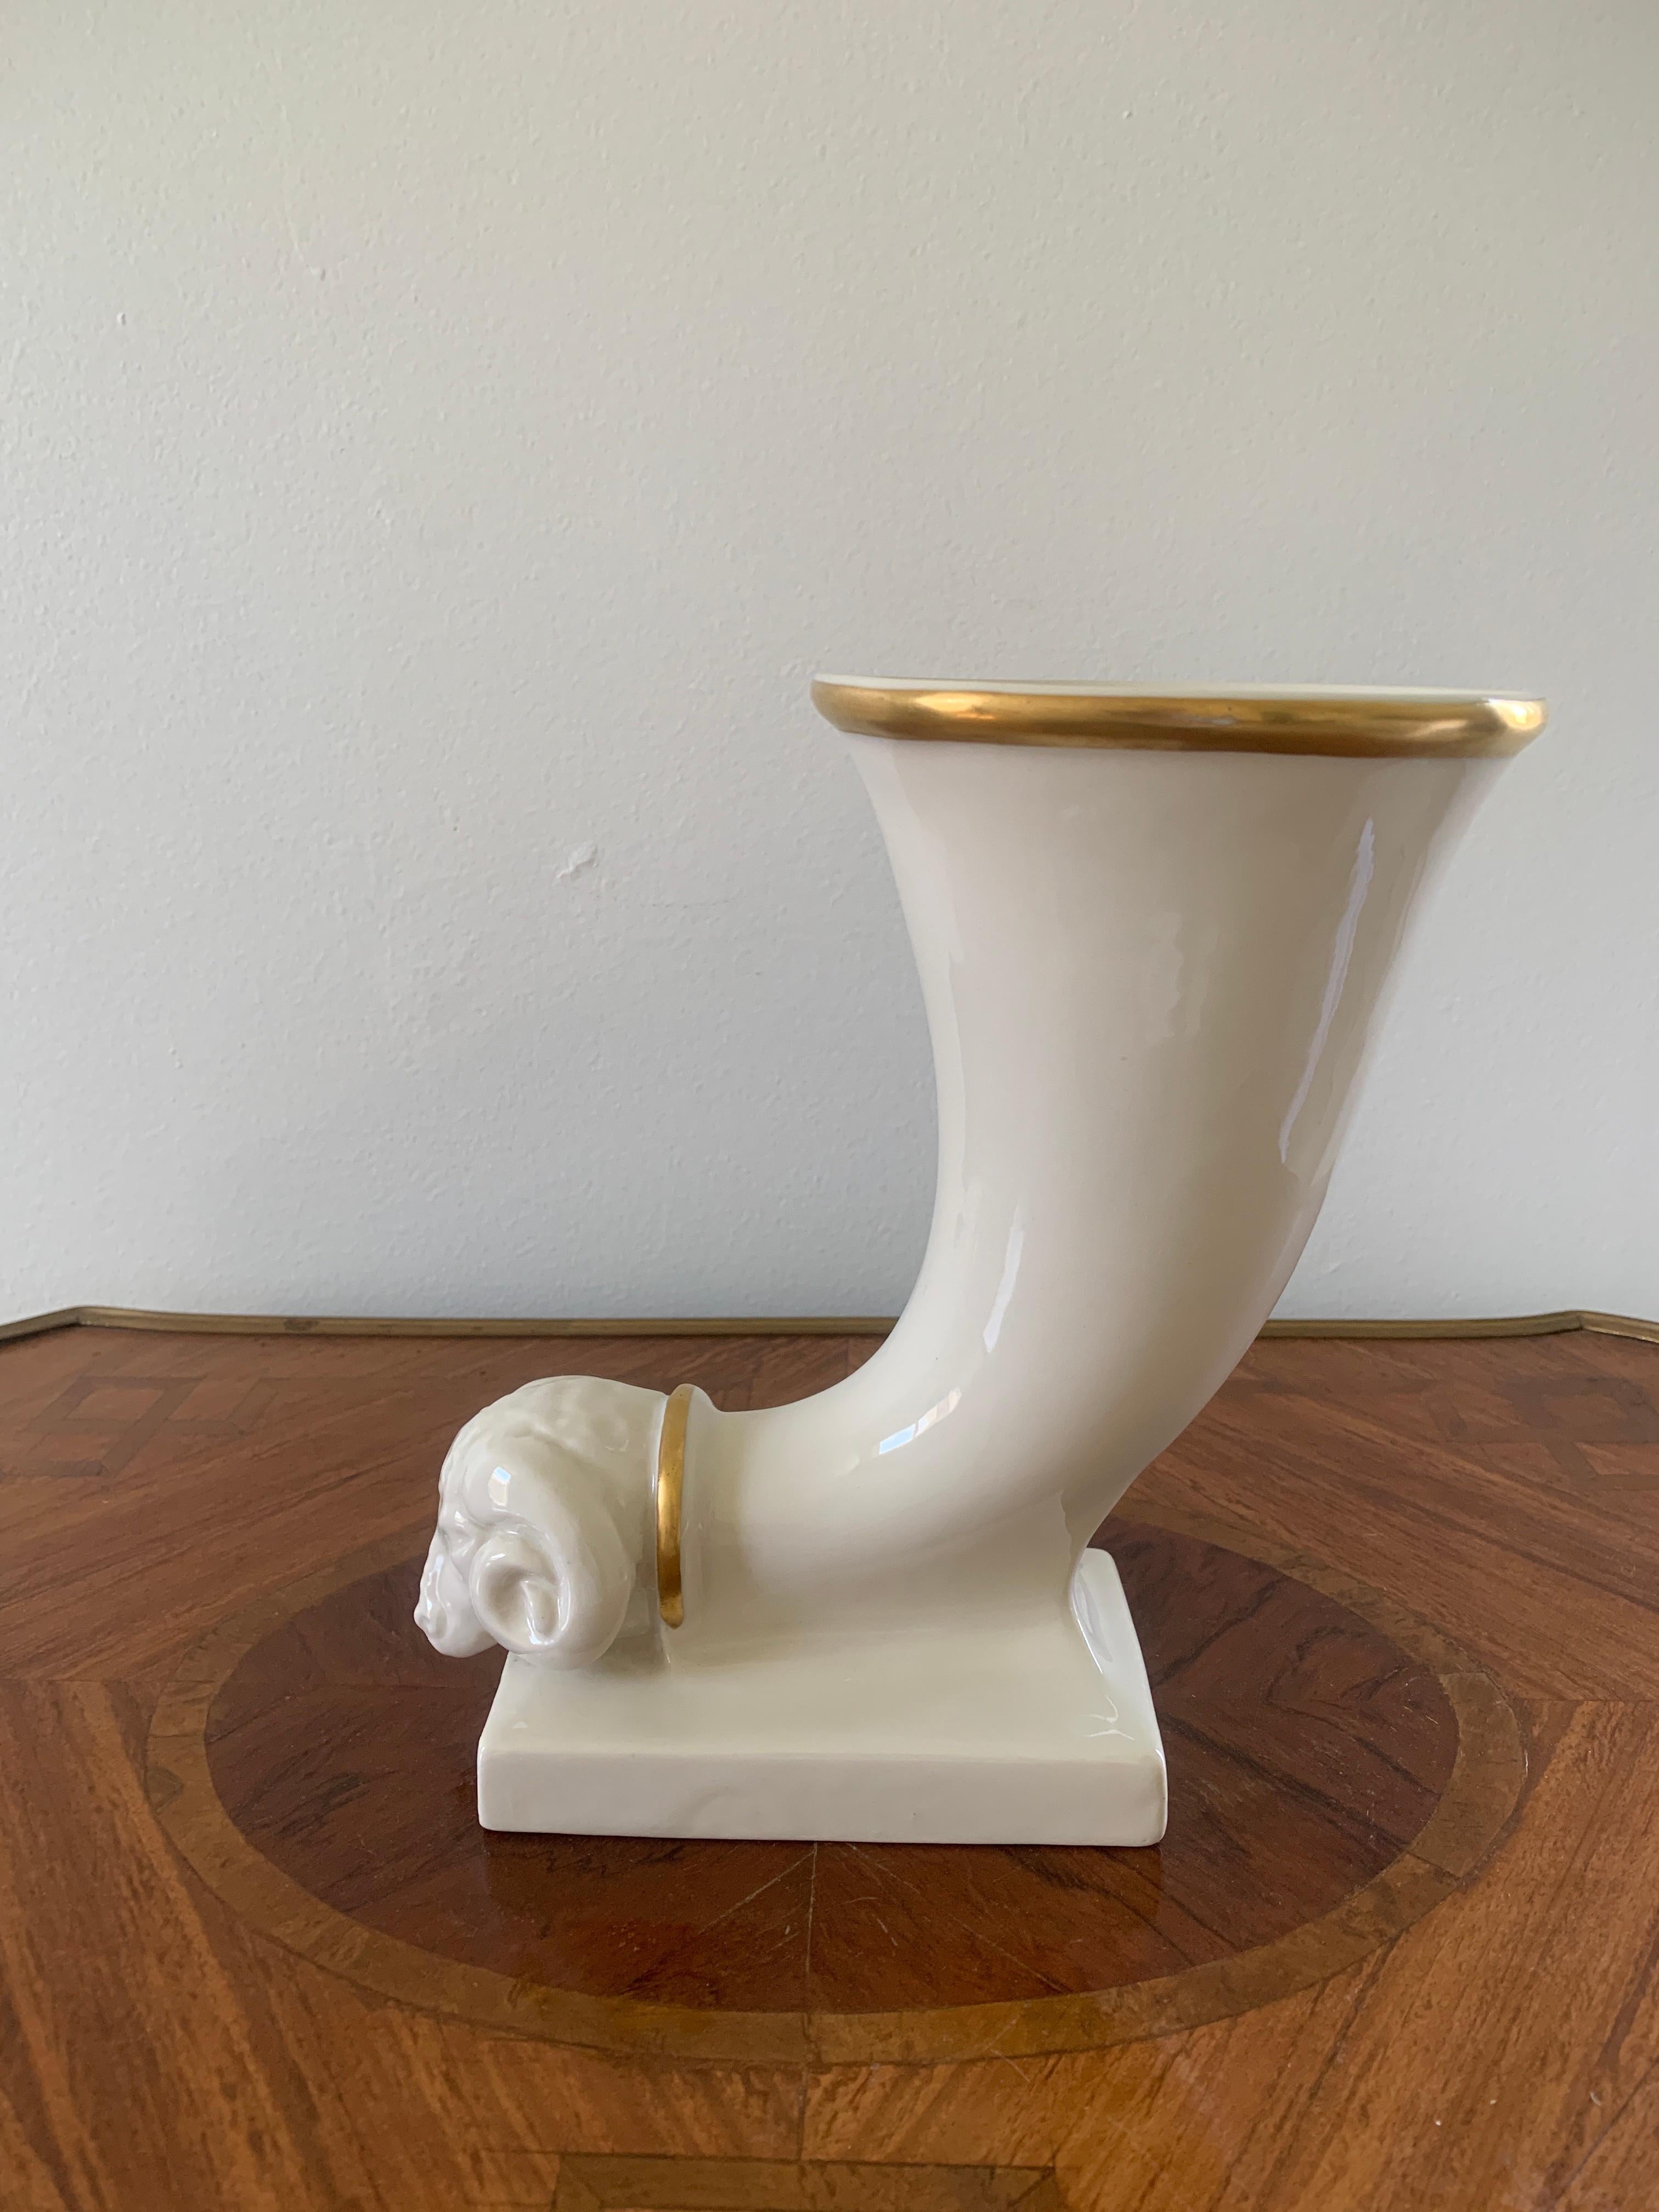 Magnifique vase corne d'abondance en porcelaine de couleur crème de style néoclassique avec une tête de bélier et des détails dorés peints à la main.
